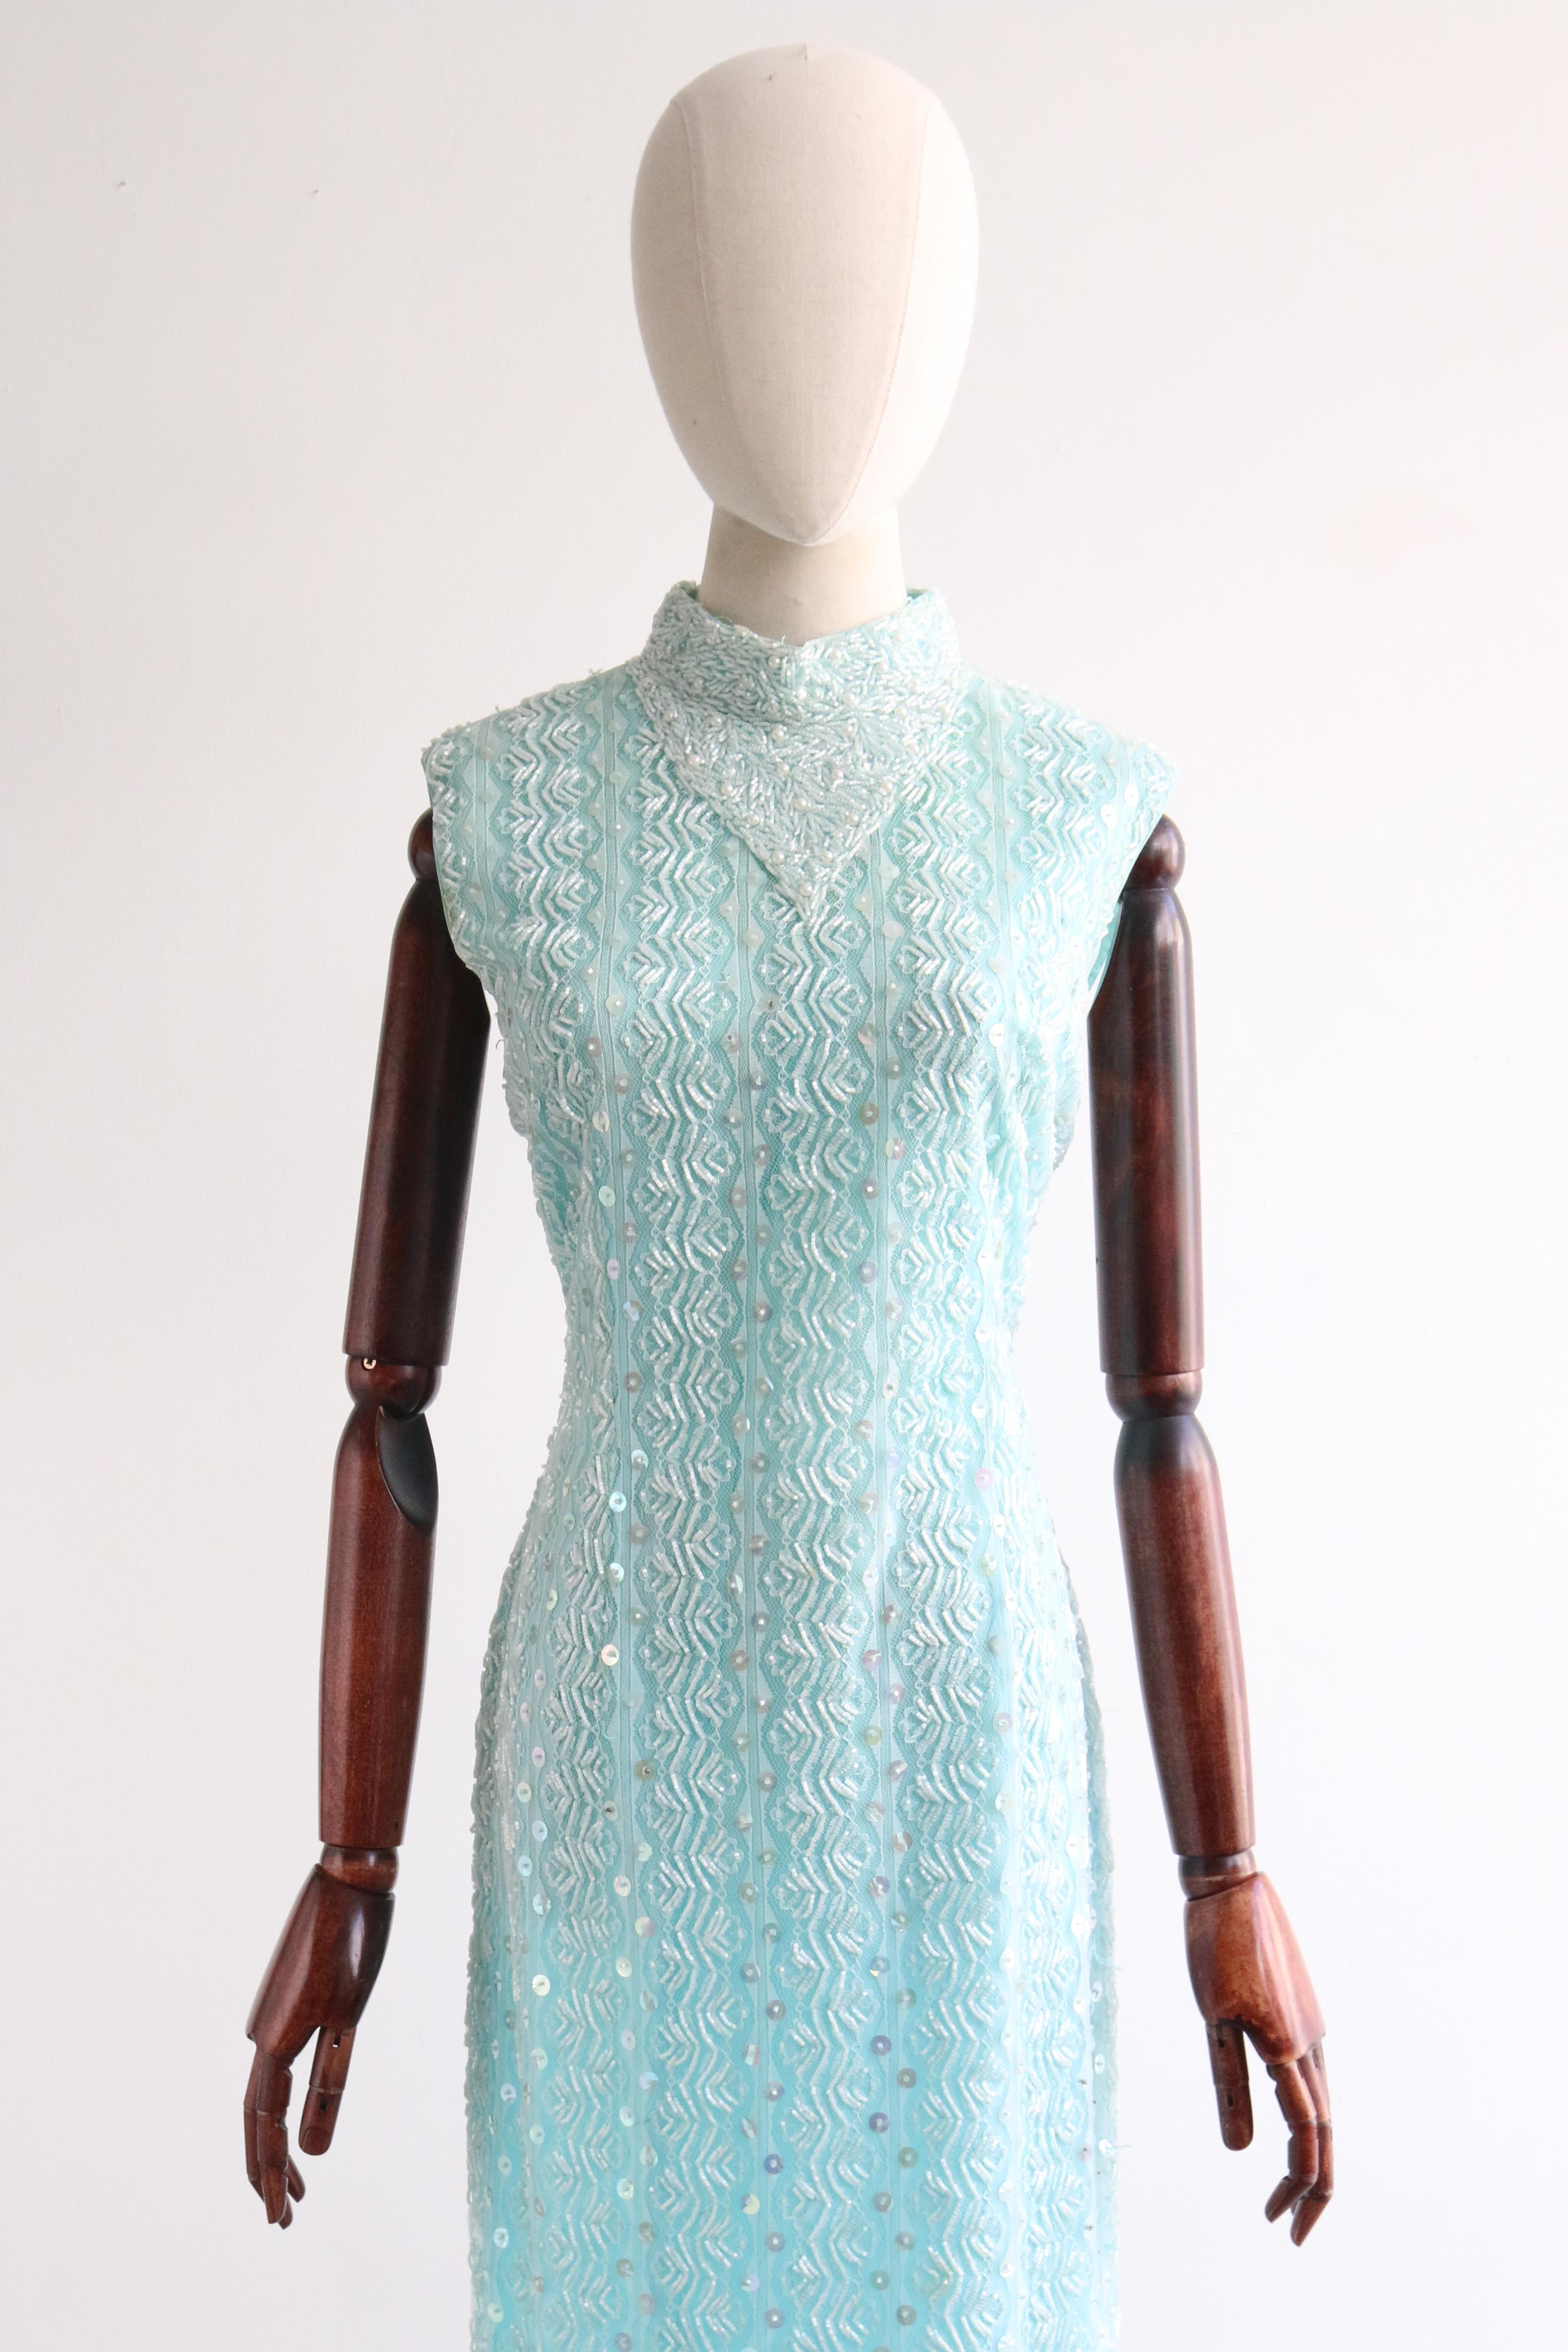 Dieses bezaubernde aquafarbene Kleid aus den 1960er Jahren ist mit einem hellblauen Überwurf aus floraler Spitze verziert, der wiederum mit perlmuttfarbenen Glasperlen, schillernden Pailletten und Perlen verziert ist - das perfekte Statement für